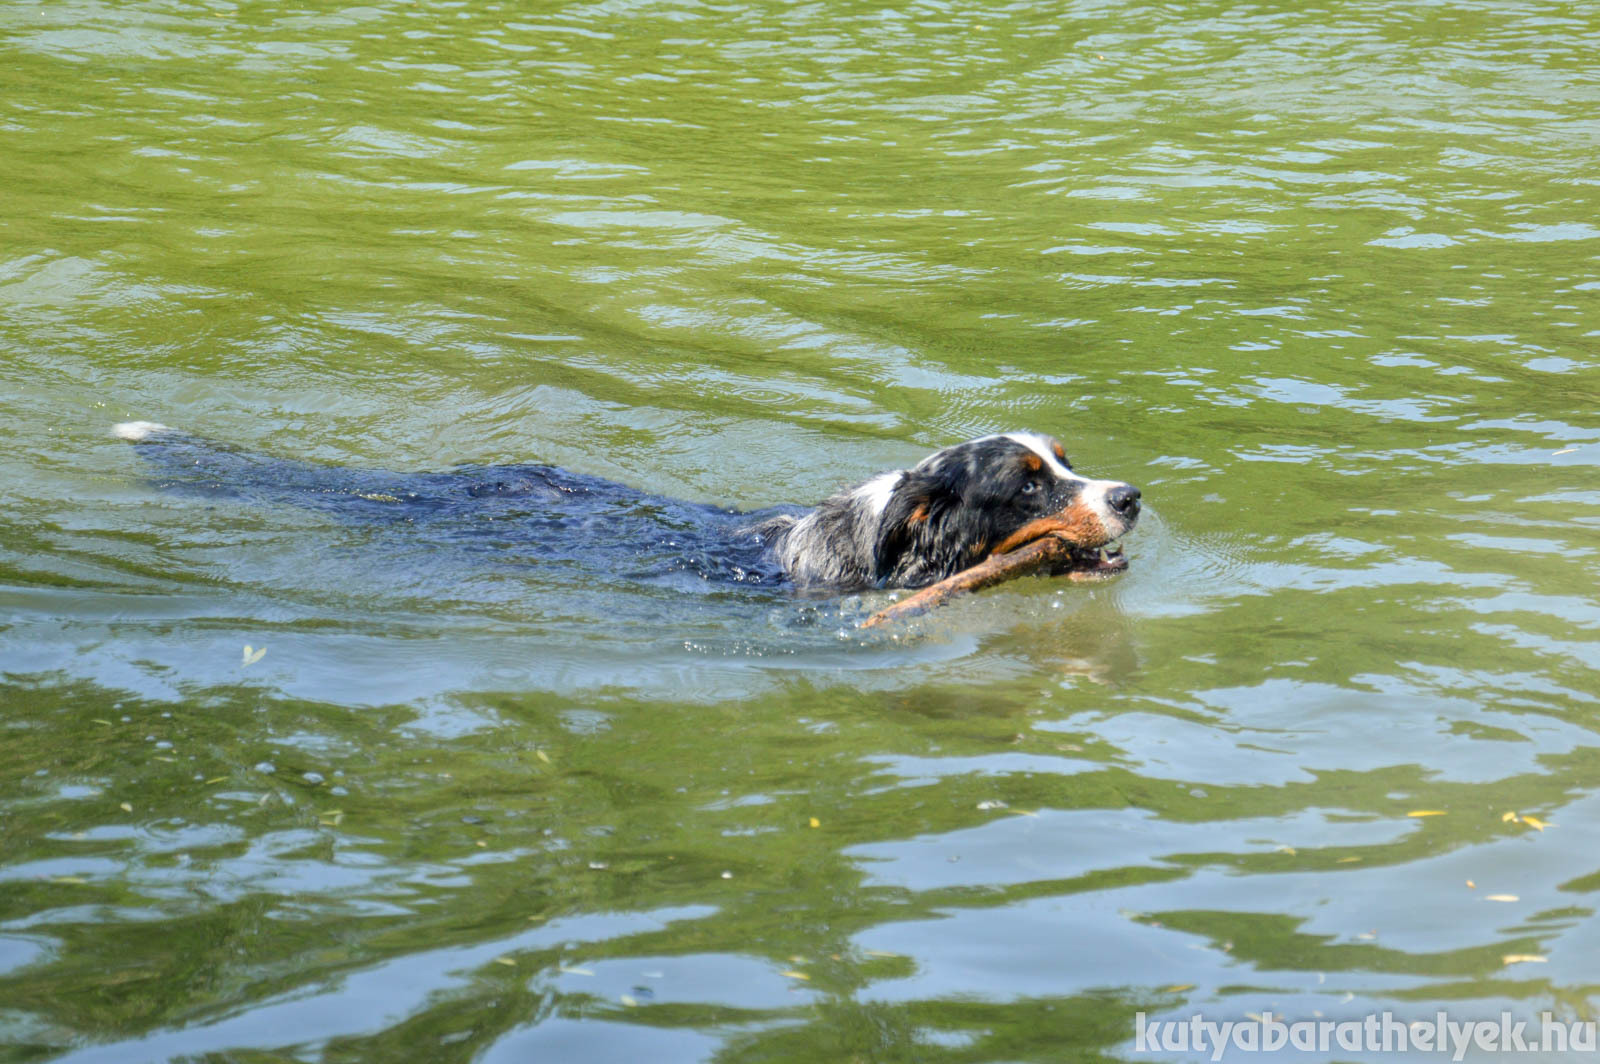 Nagyon élvezték a kutyák a hűs vizet